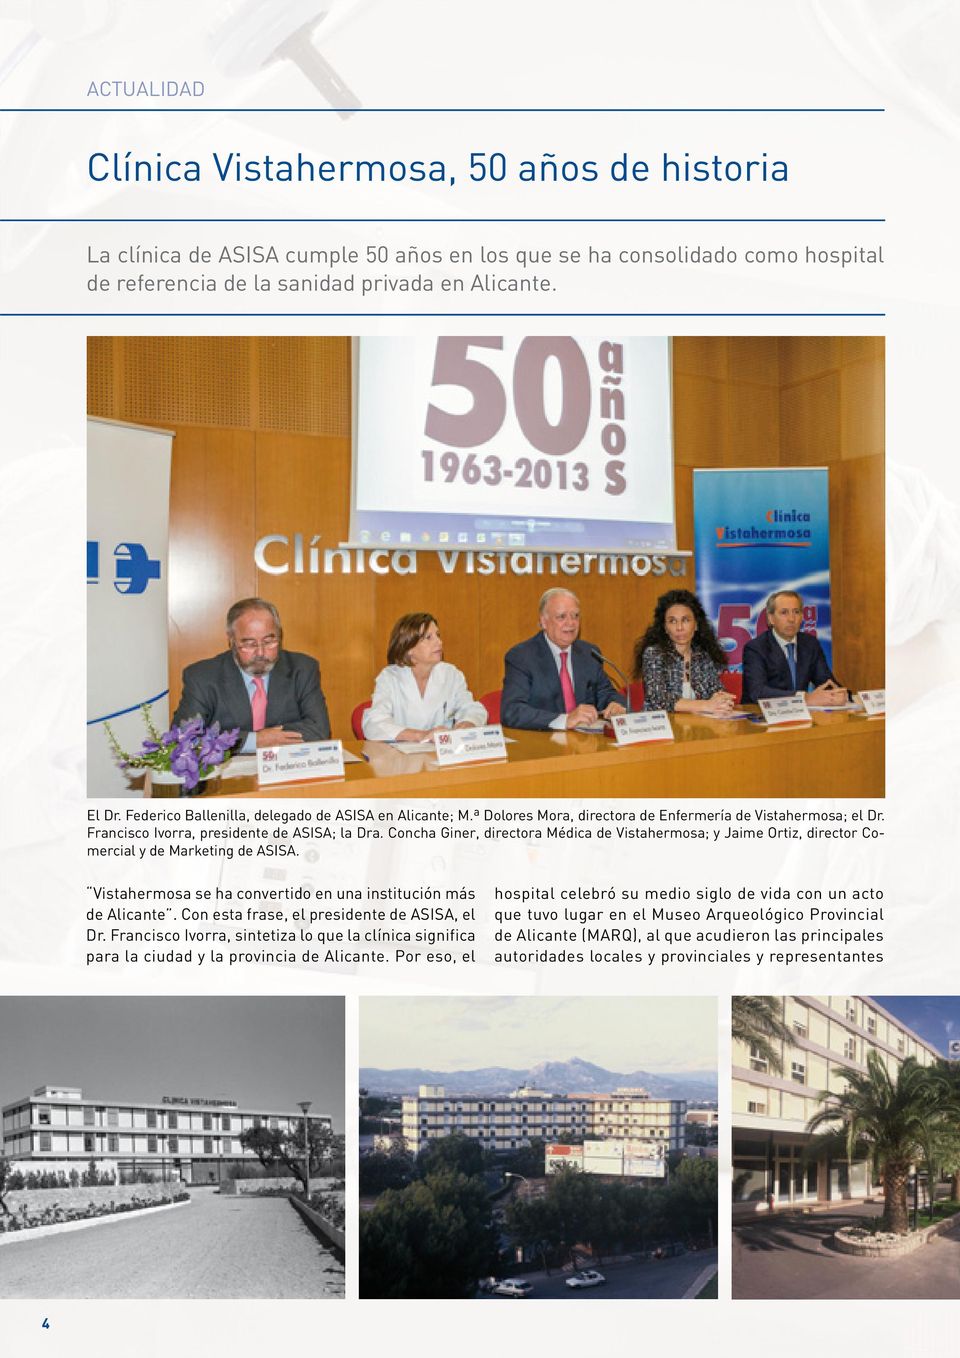 Concha Giner, directora Médica de Vistahermosa; y Jaime Ortiz, director Comercial y de Marketing de ASISA. Vistahermosa se ha convertido en una institución más de Alicante.